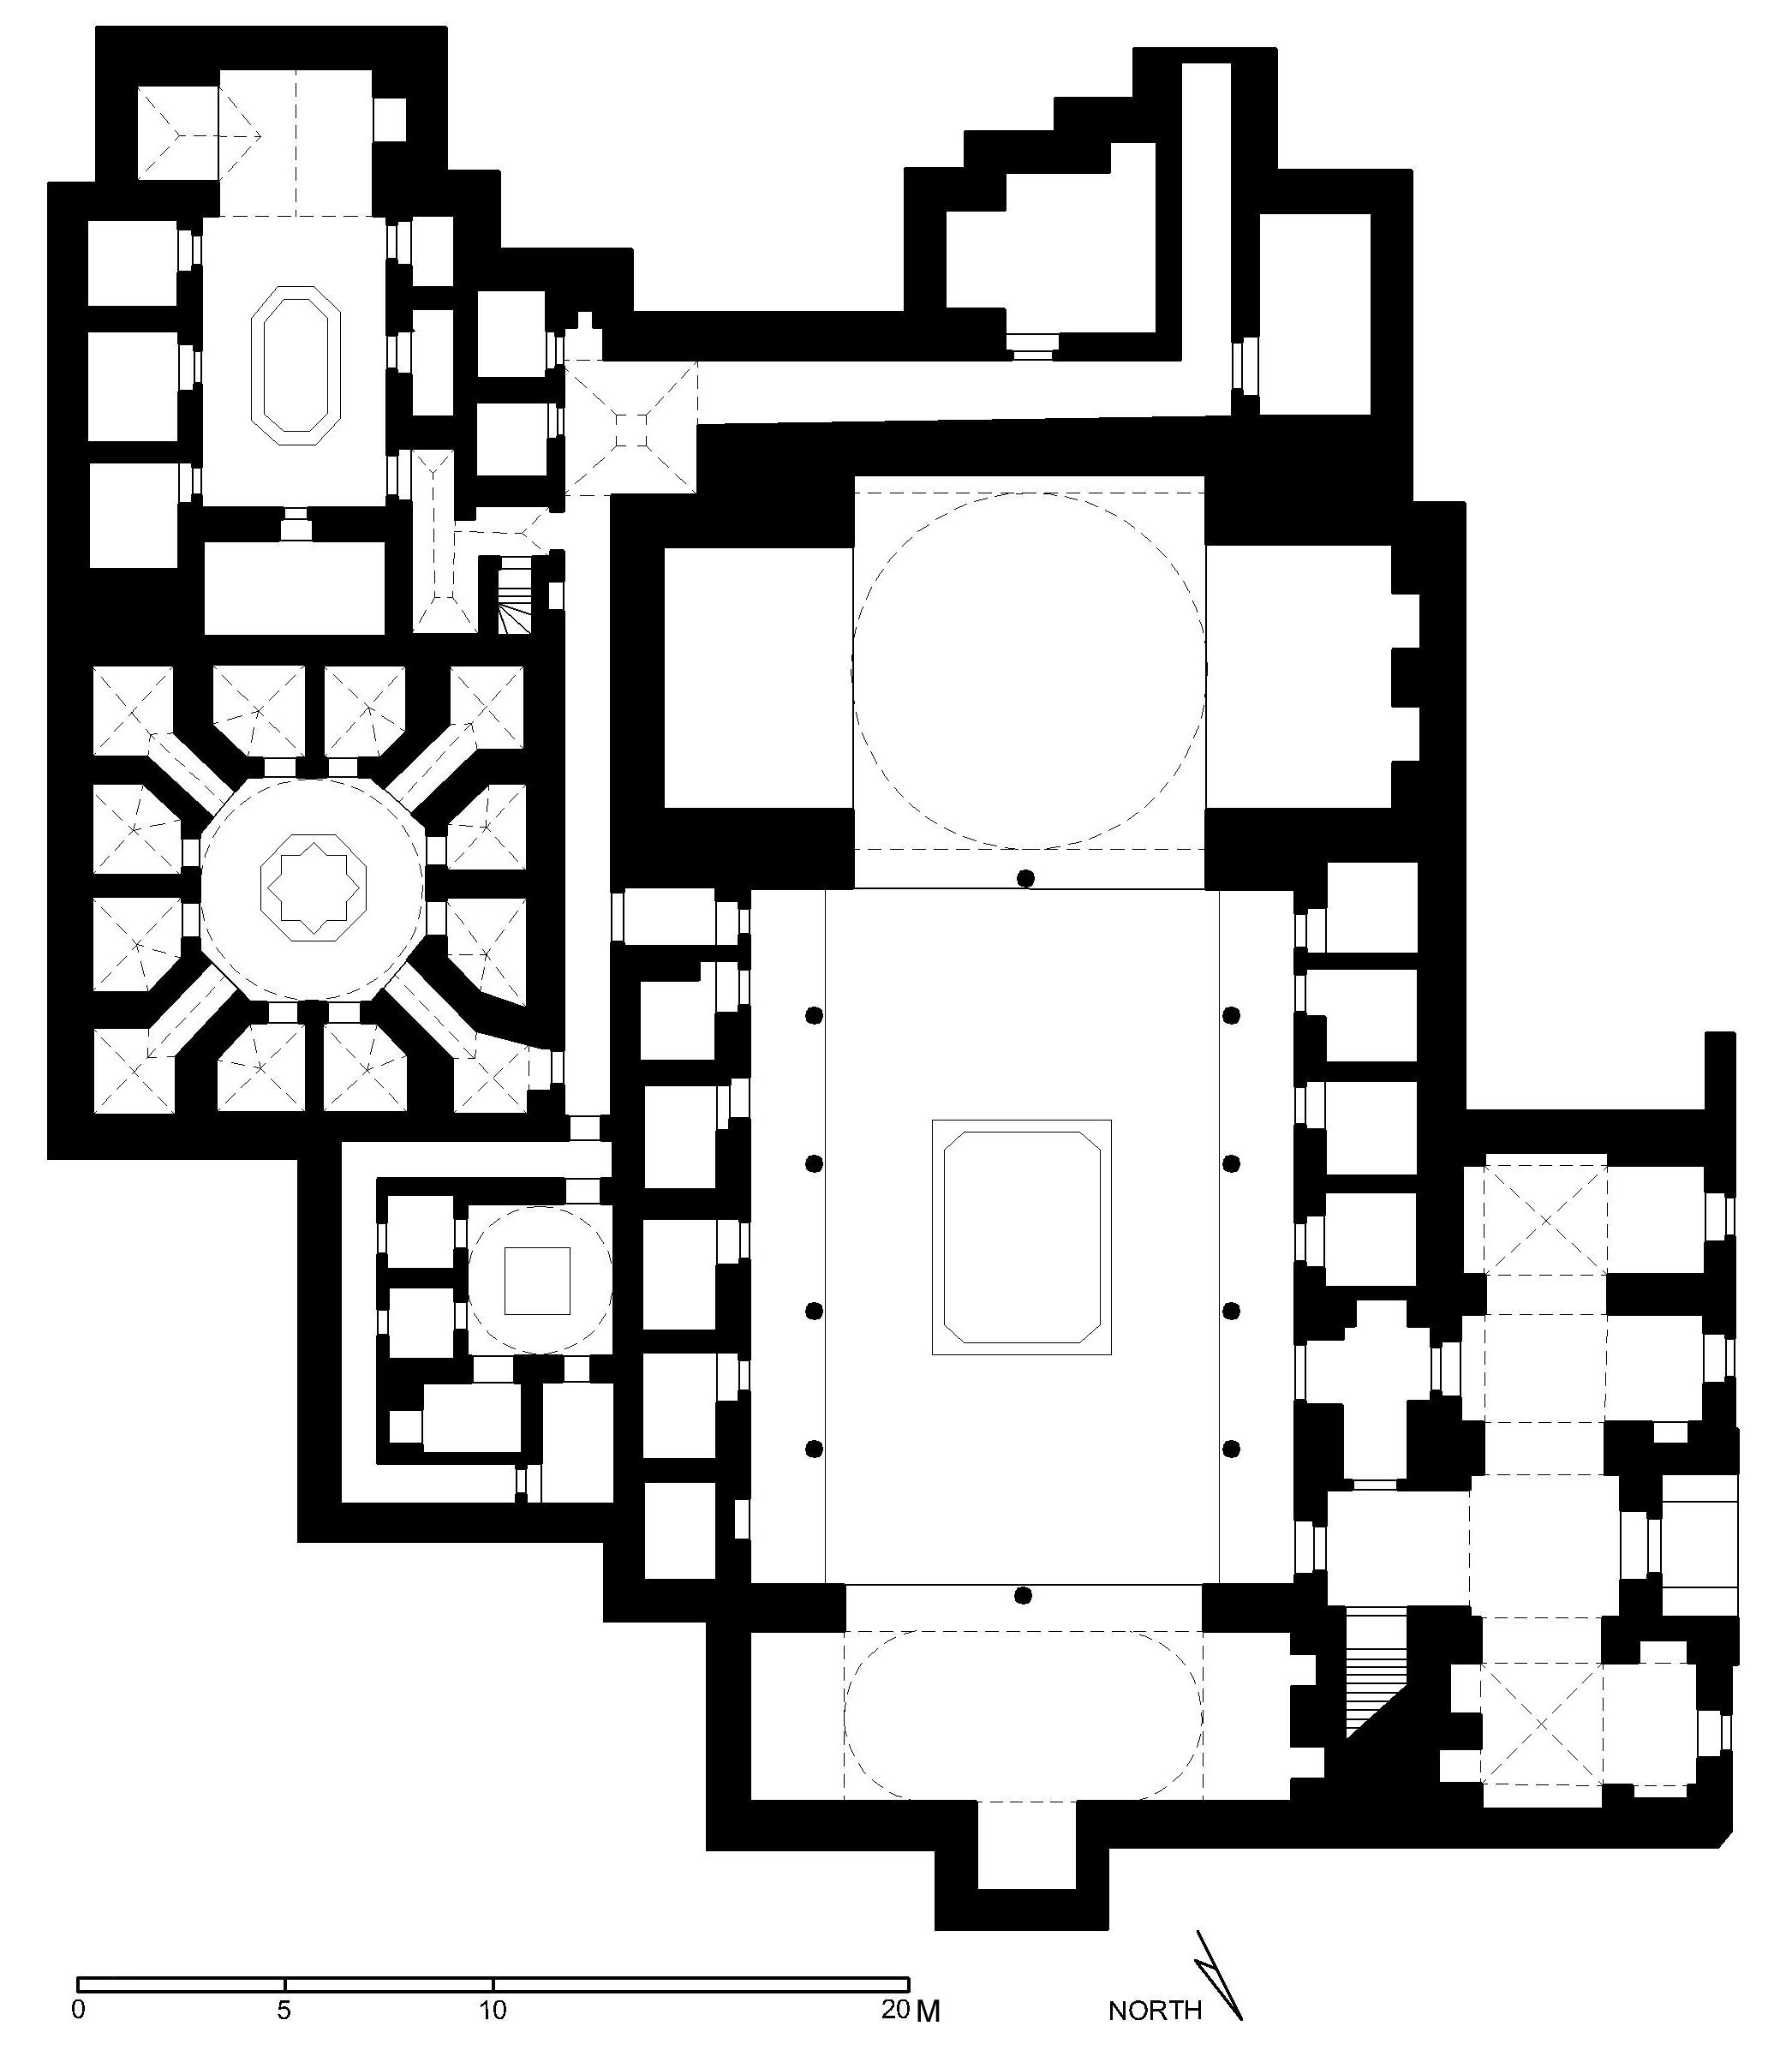 Floor plan of maristan (after Meinecke)